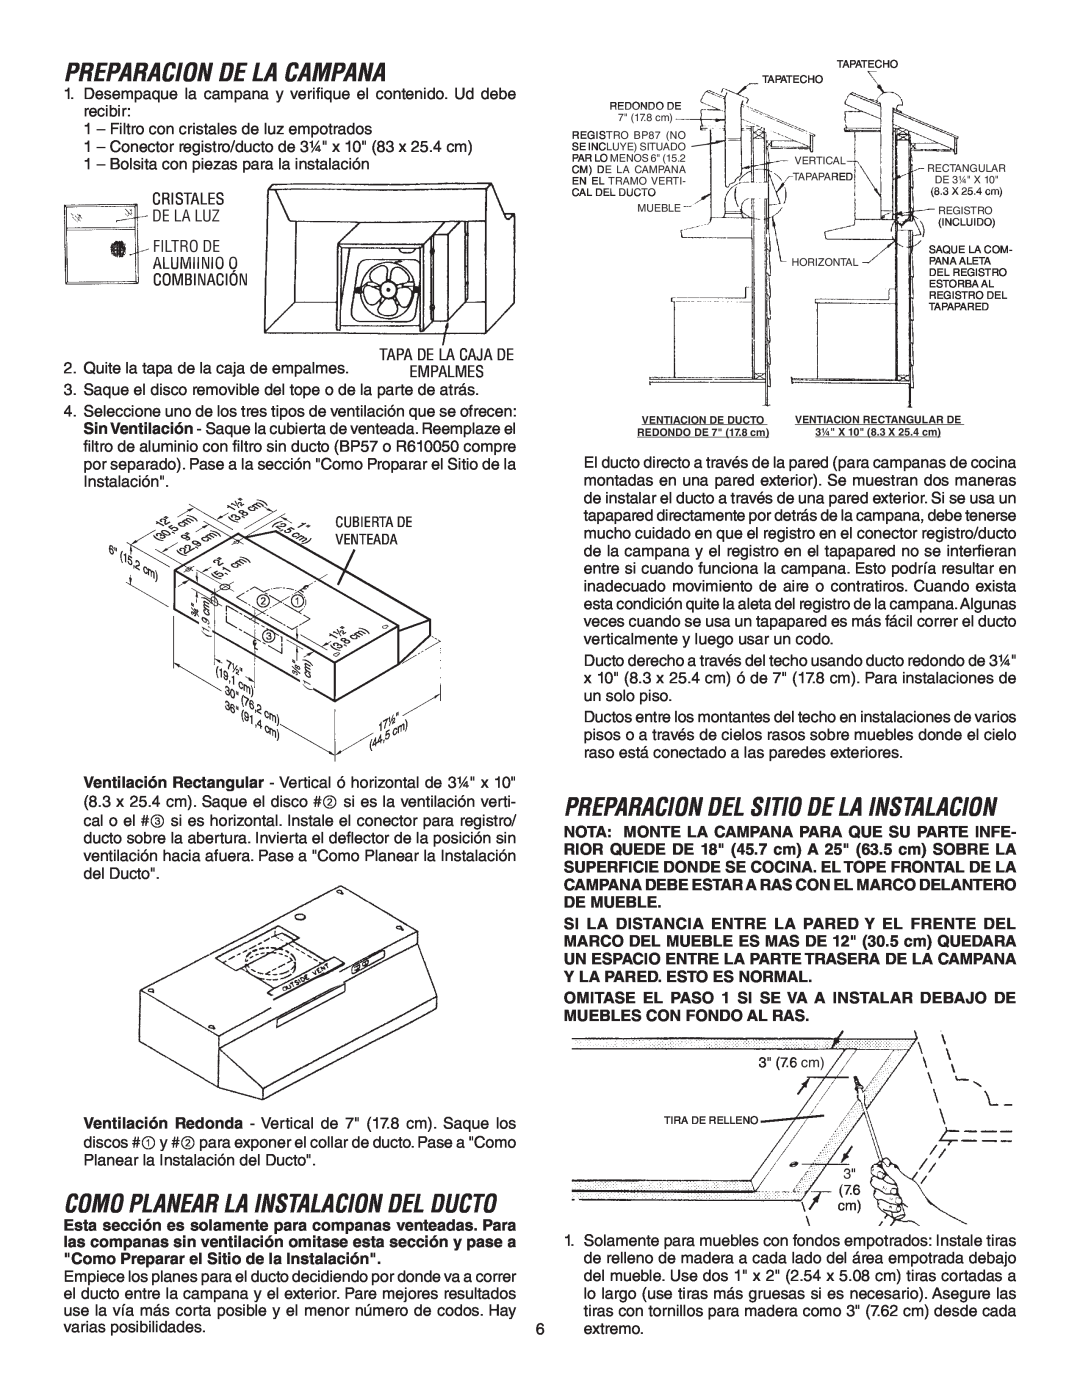 Broan 433011 Preparacion De La Campana, Como Planear La Instalacion Del Ducto, Preparacion Del Sitio De La Instalacion 